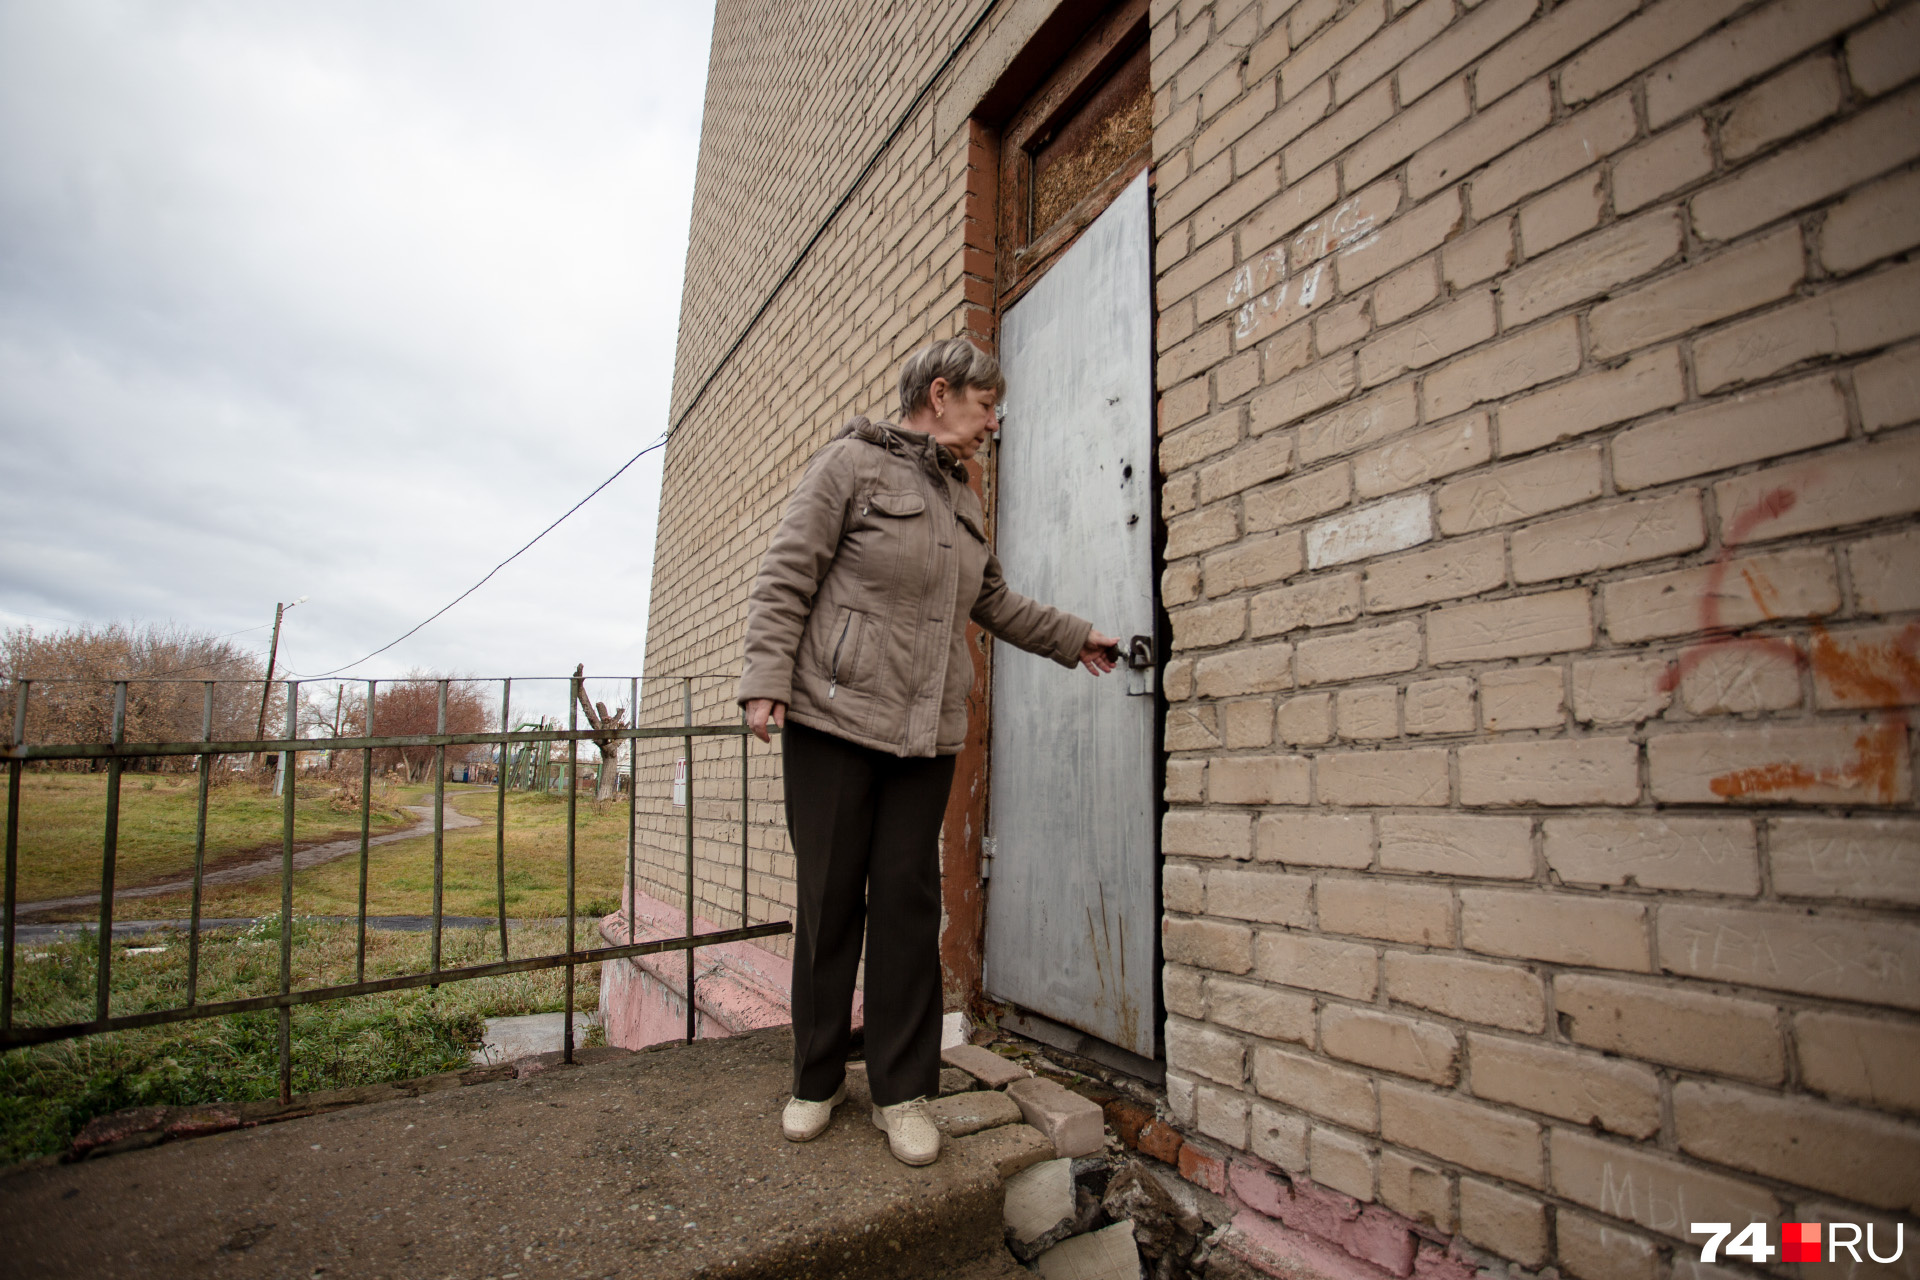 Подсобное помещение, где живёт 57-летняя Елена Михальченко, находится с торца школы